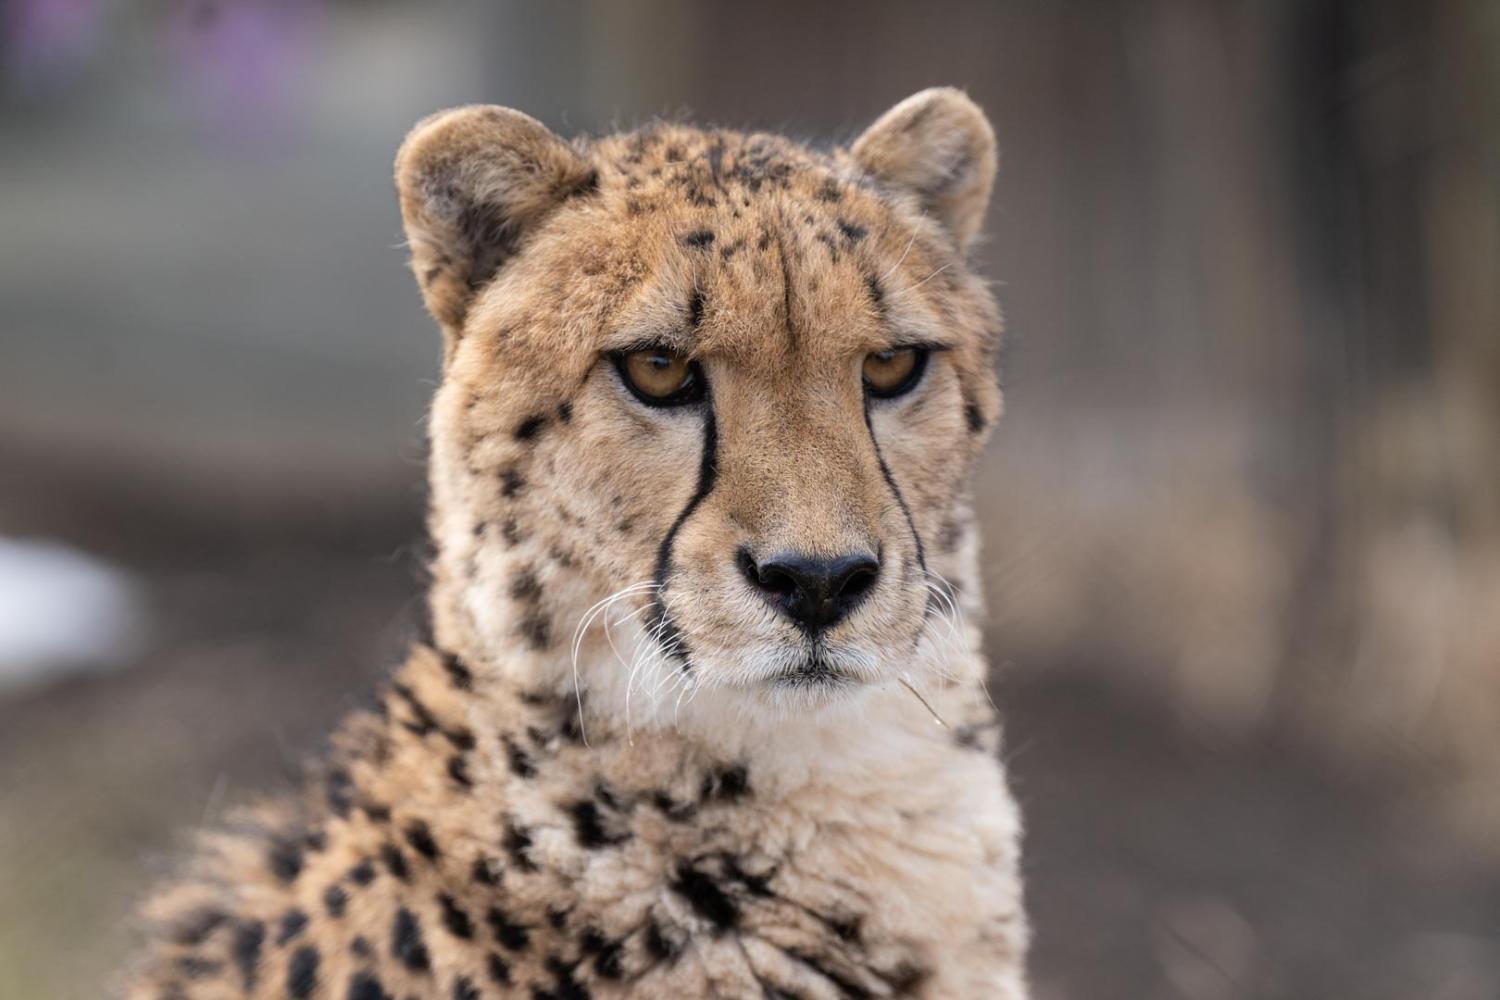 Closeup image of cheetah face